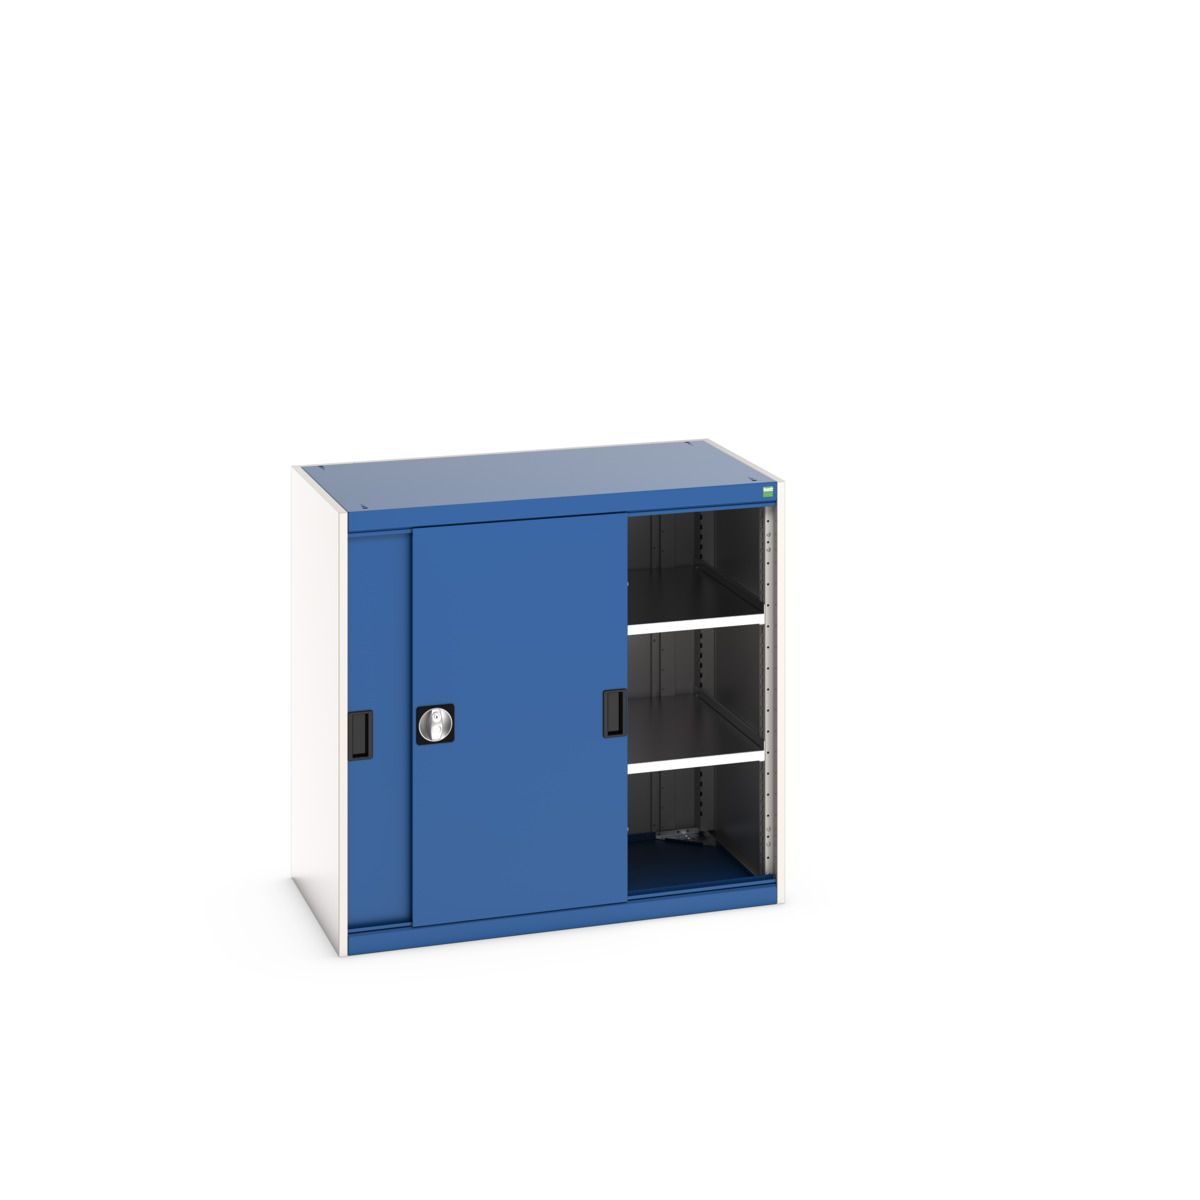 40021138.11V - cubio cupboard